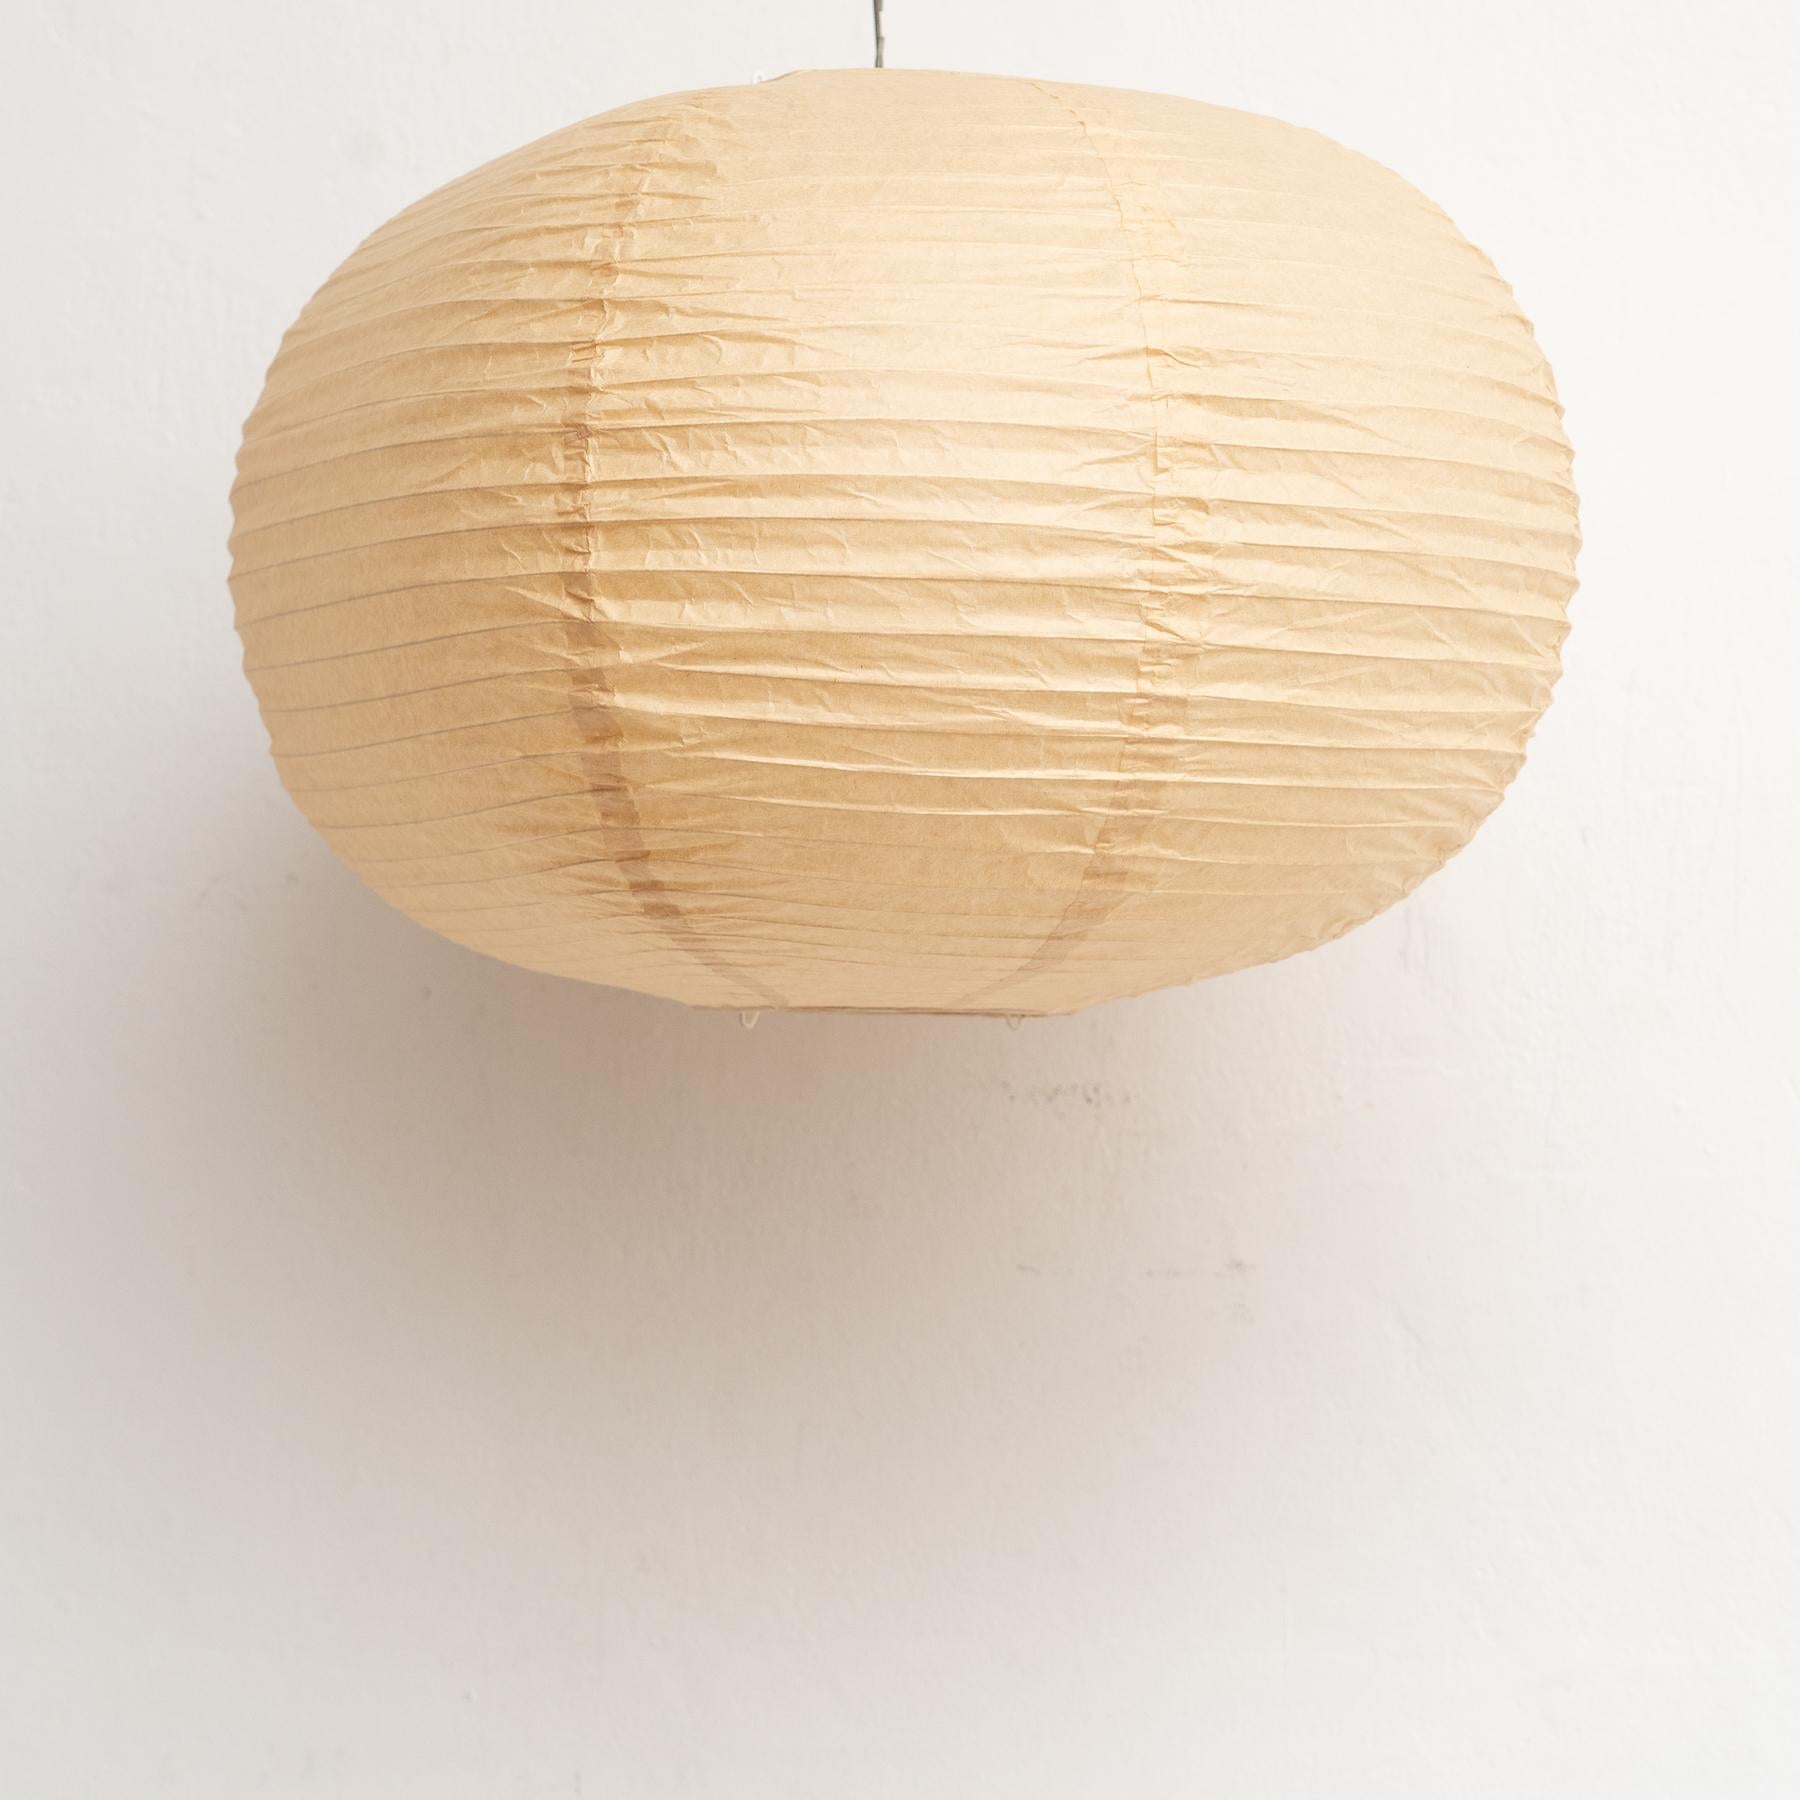 Lampe en papier moderne du milieu du siècle d'après Isamu Noguchi

Fabricant inconnu, vers 1990.

En bon état d'origine, avec de légères usures dues à l'âge et à l'utilisation, préservant une belle patine.

Abat-jour en papier uniquement, sans